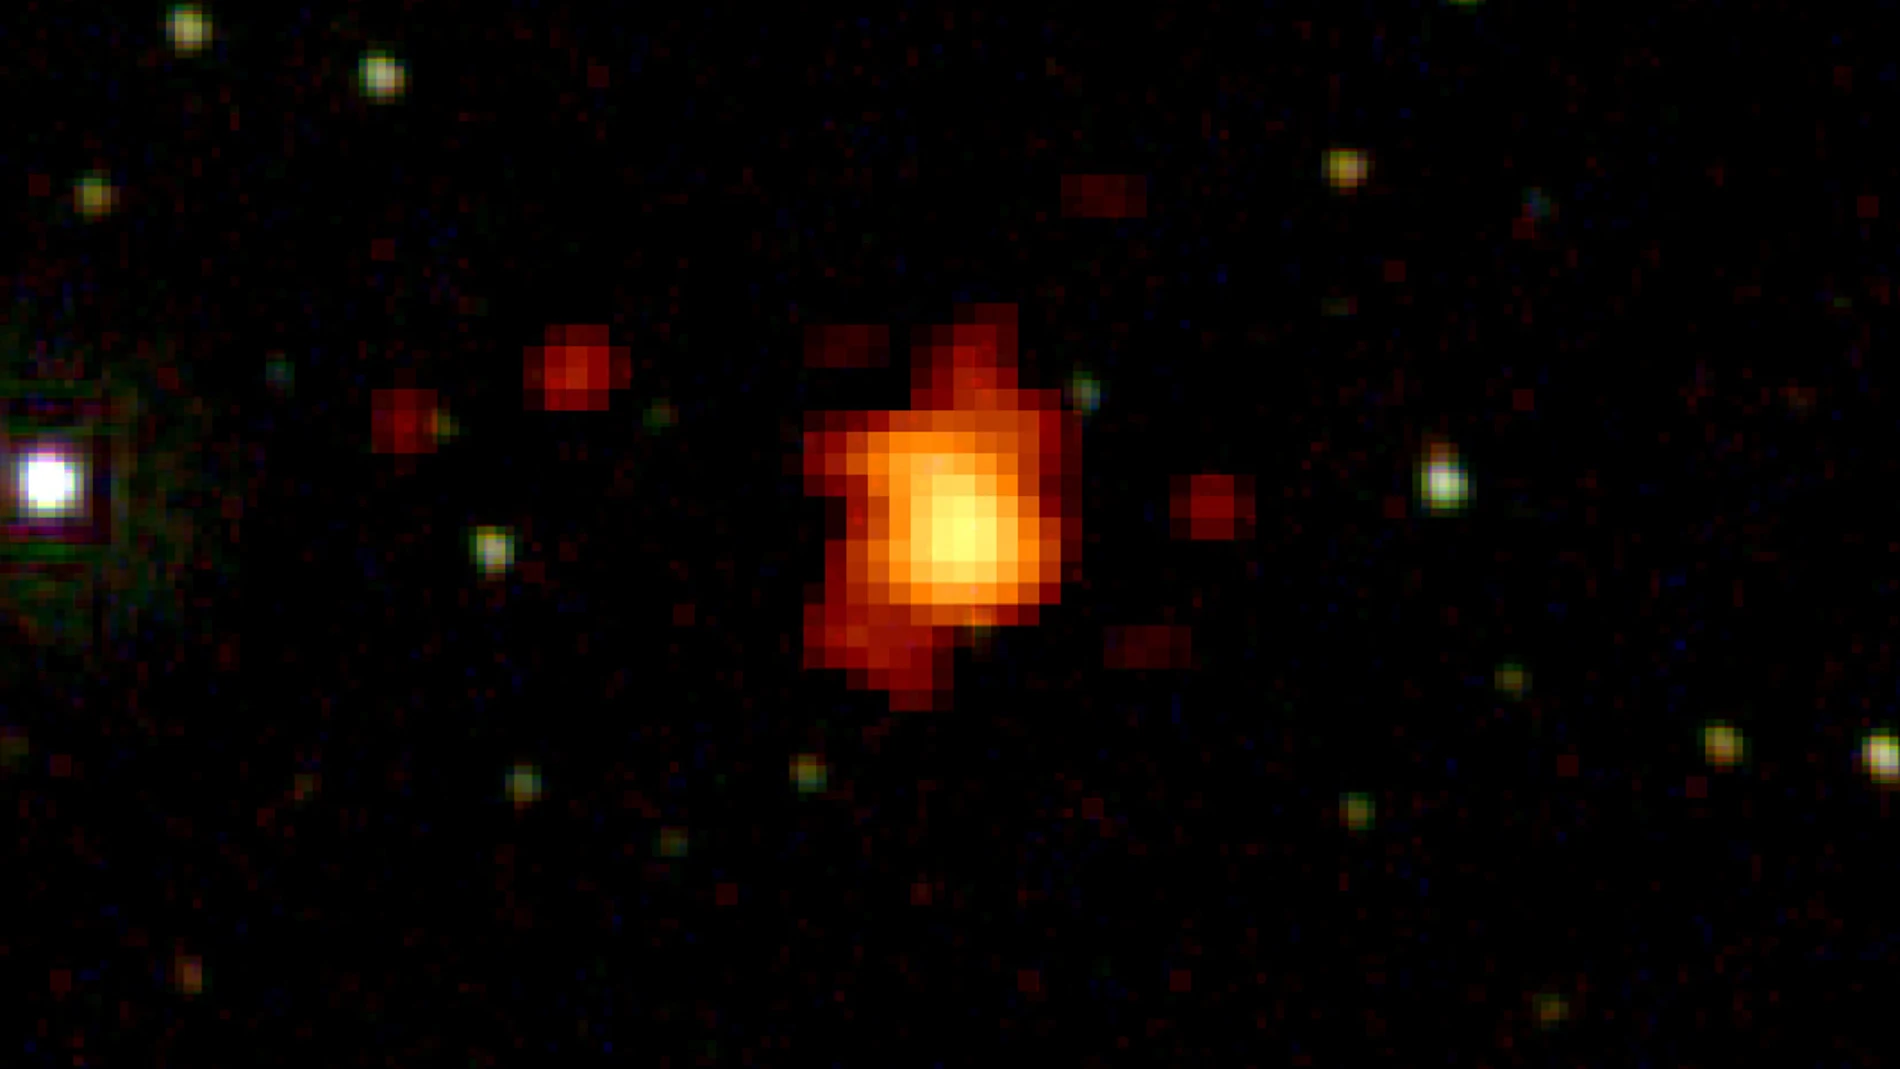 El GRB 080916C, un brote de rayos gamma, aún tiene el récord de ser la explosión más violenta observada en el universo.